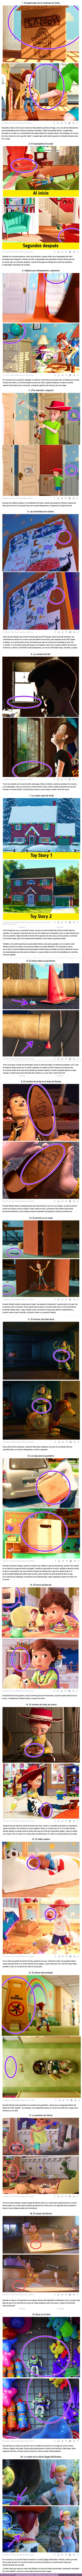 101756 - GALERÍA: 20 Errores de la saga de “Toy Story” que enviarían al infinito y más allá a la persona más observadora